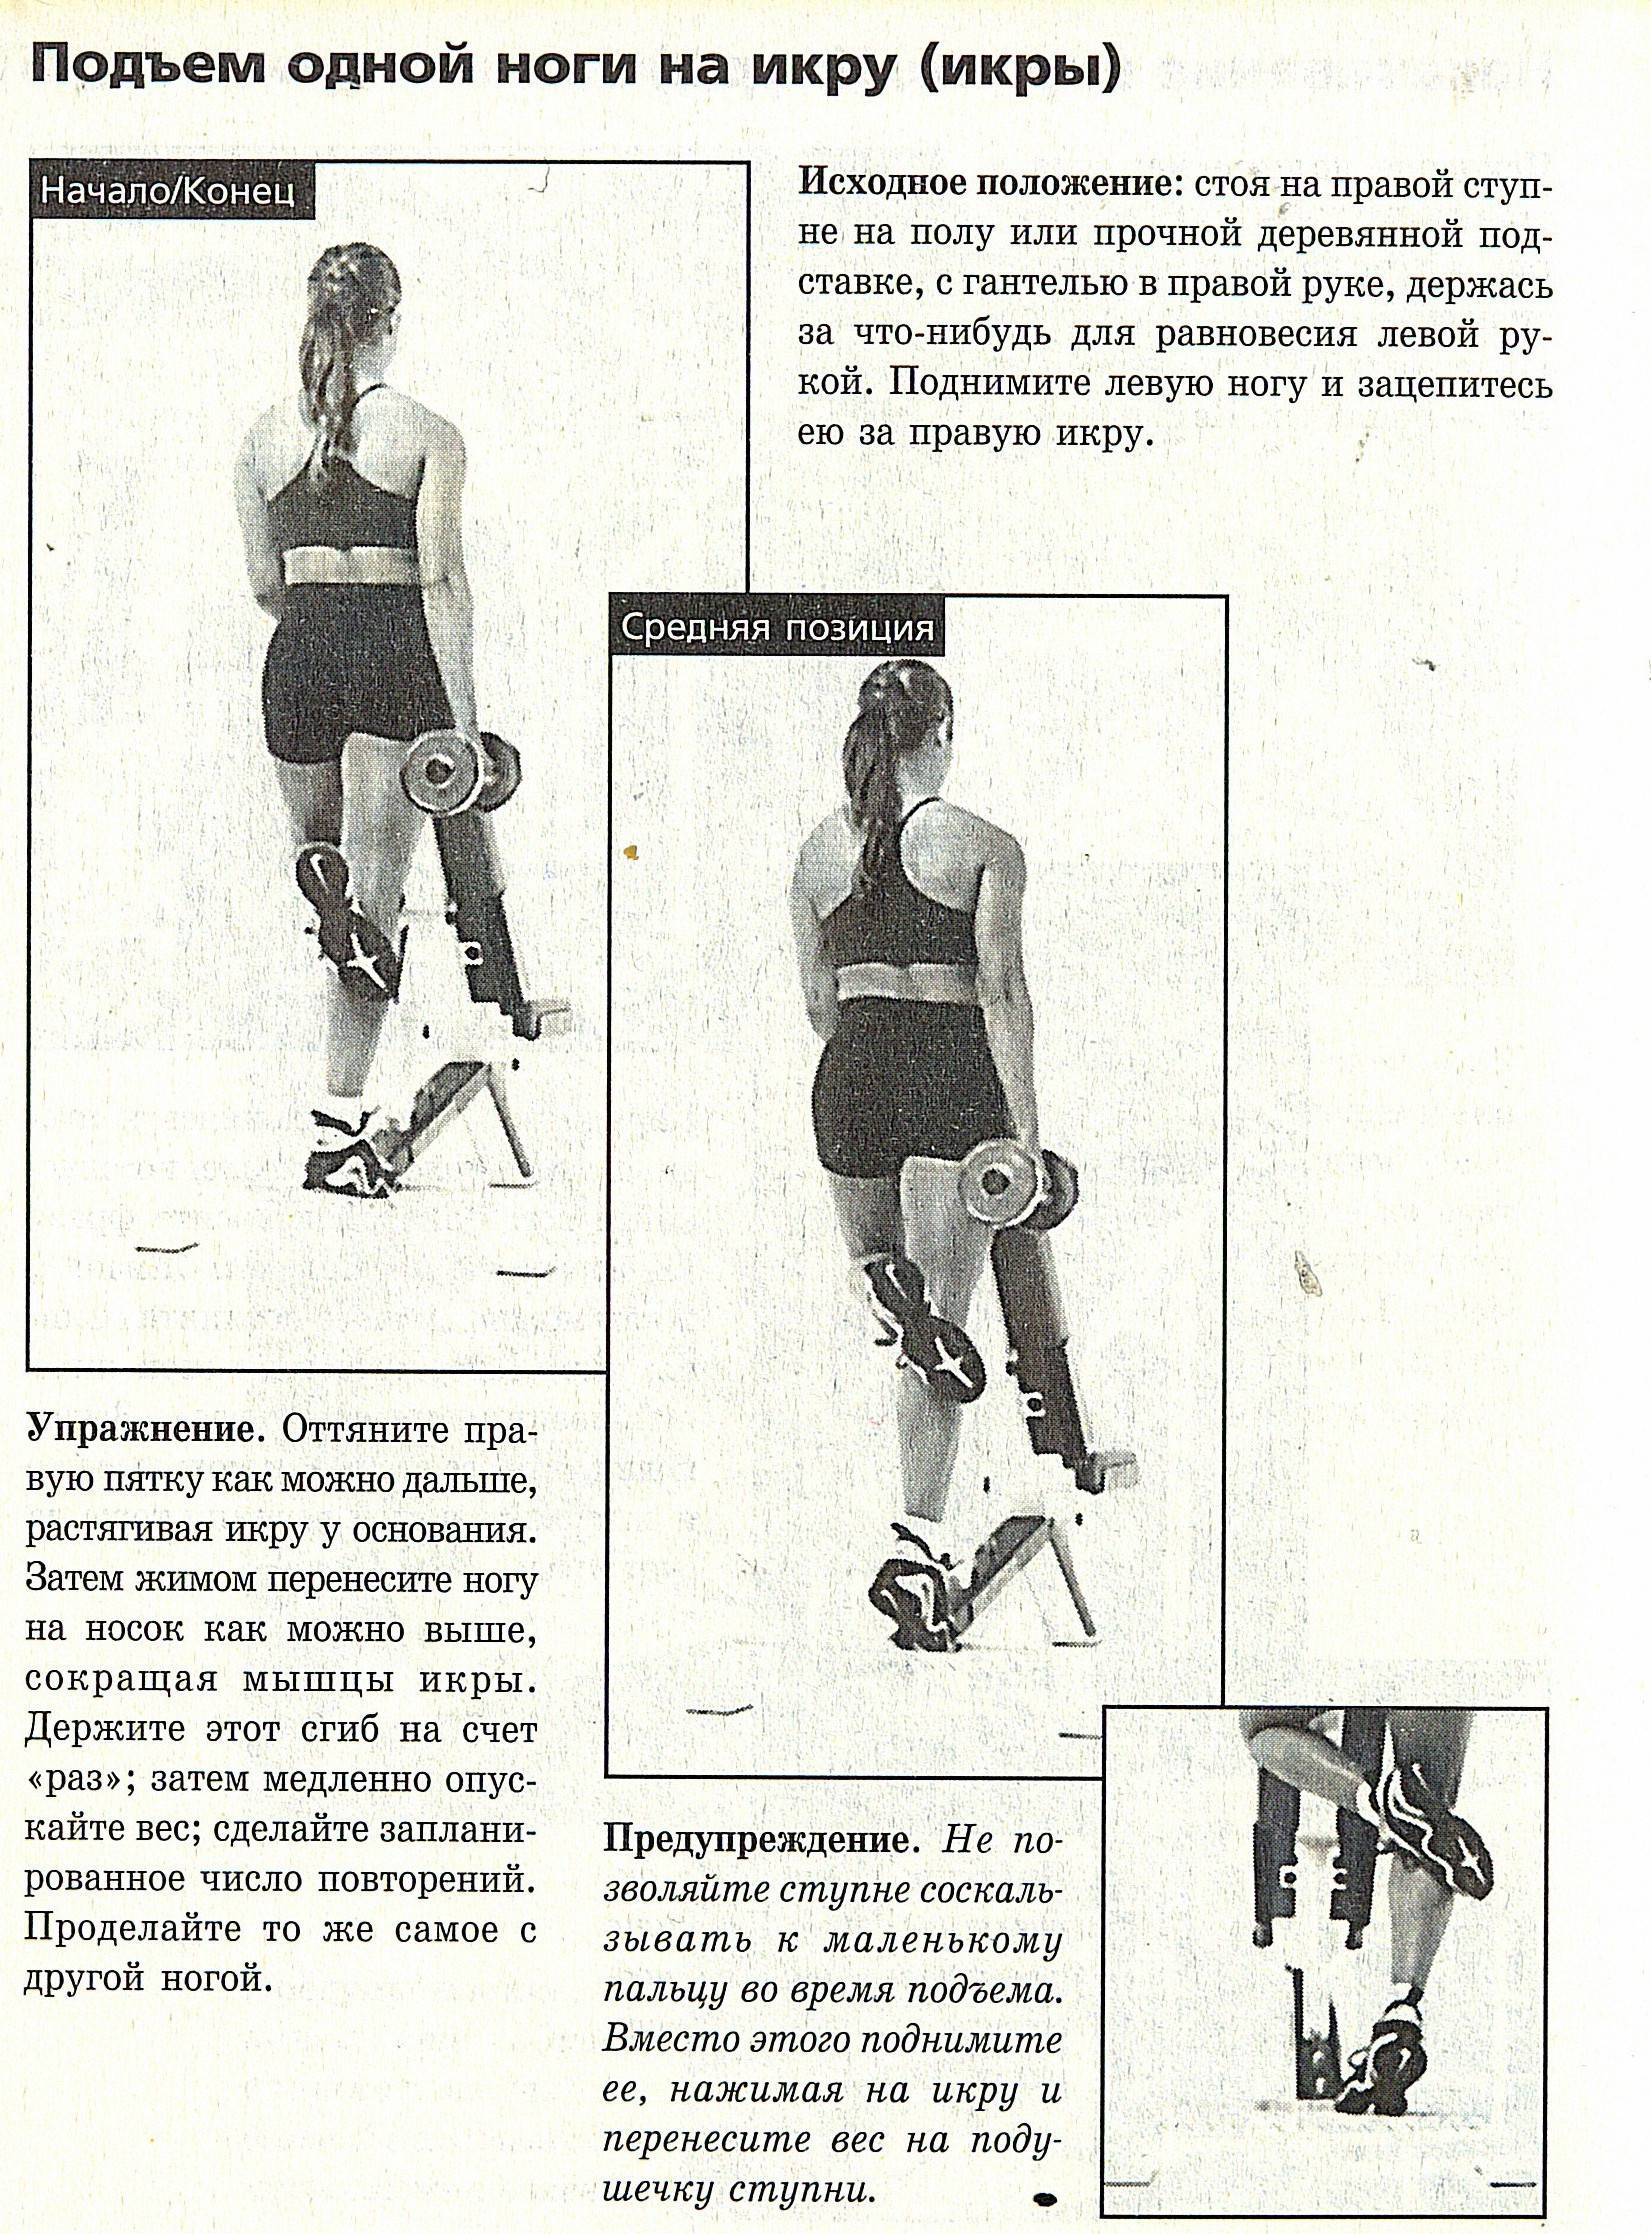 Упражнения для женщин на ноги (икроножные мышцы): делаем красивые икры в домашних условиях | rulebody.ru — правила тела